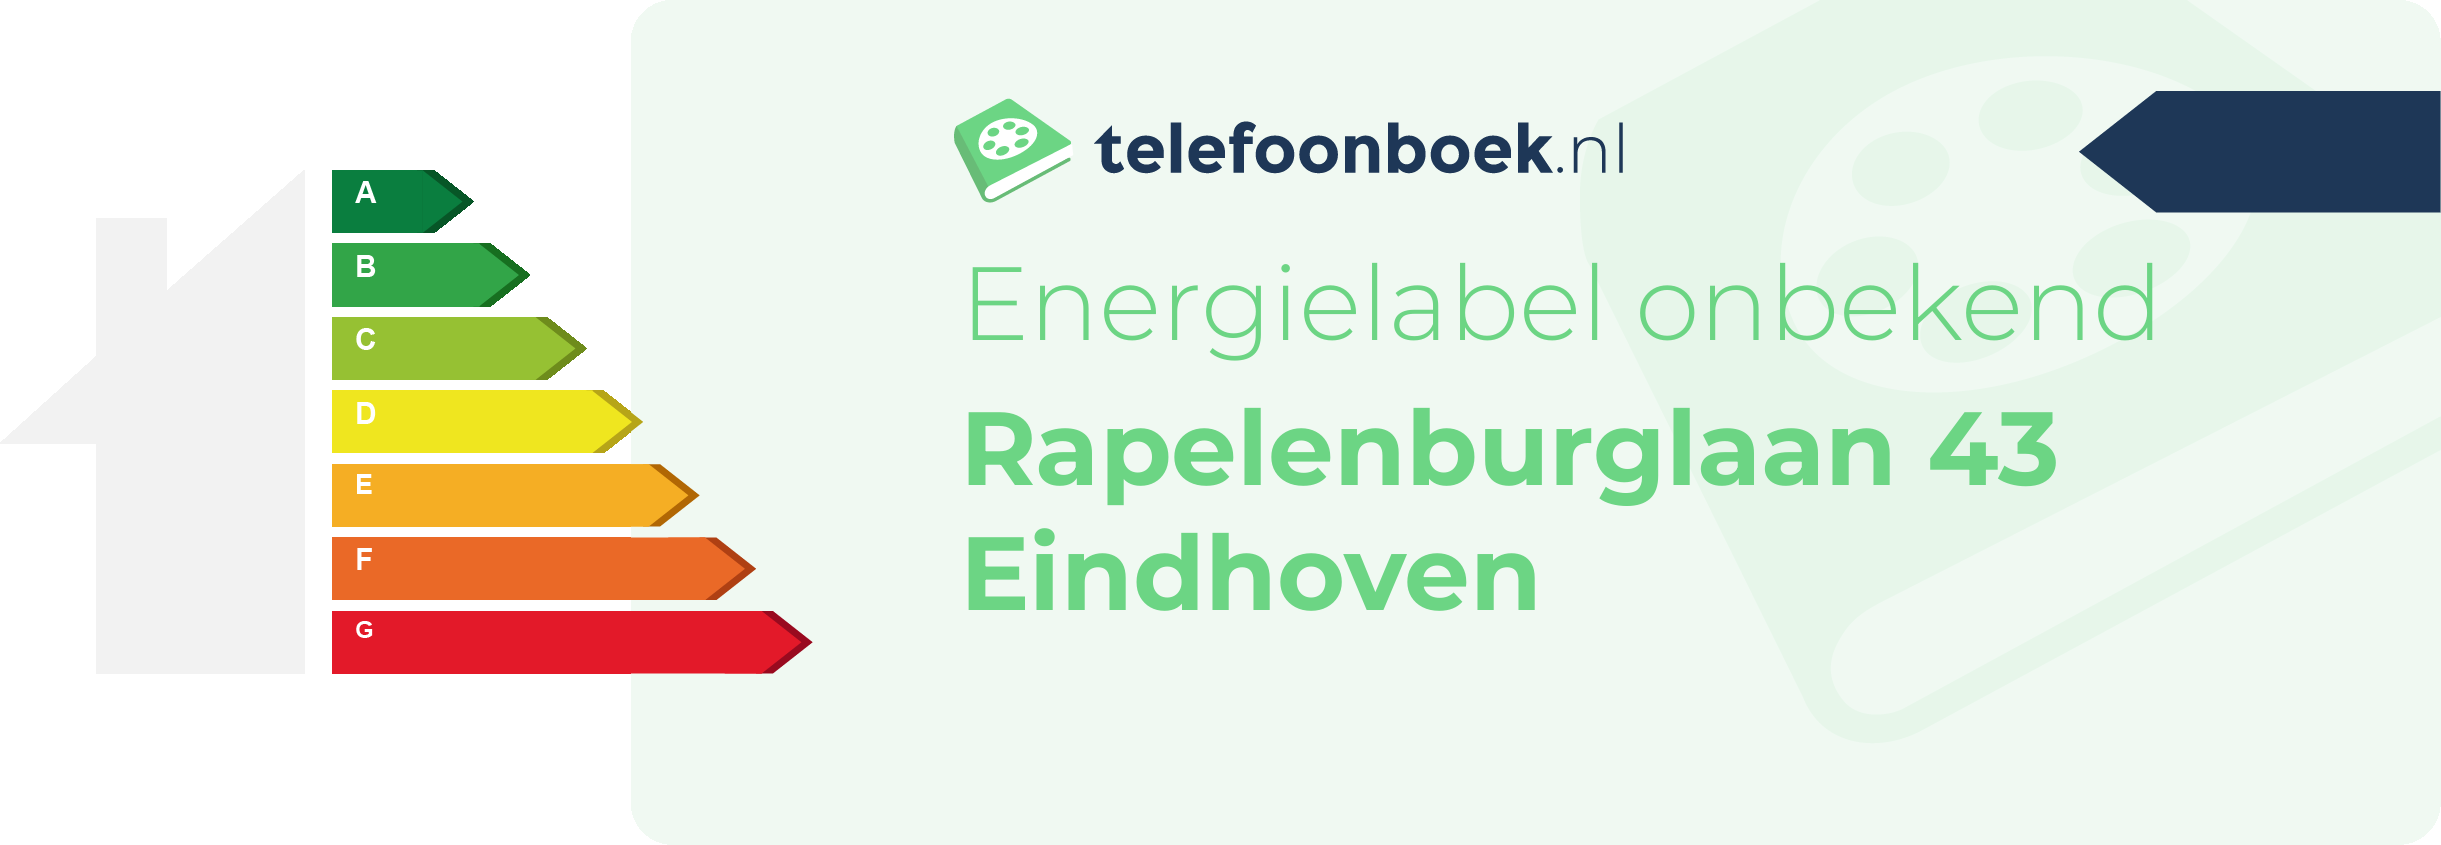 Energielabel Rapelenburglaan 43 Eindhoven